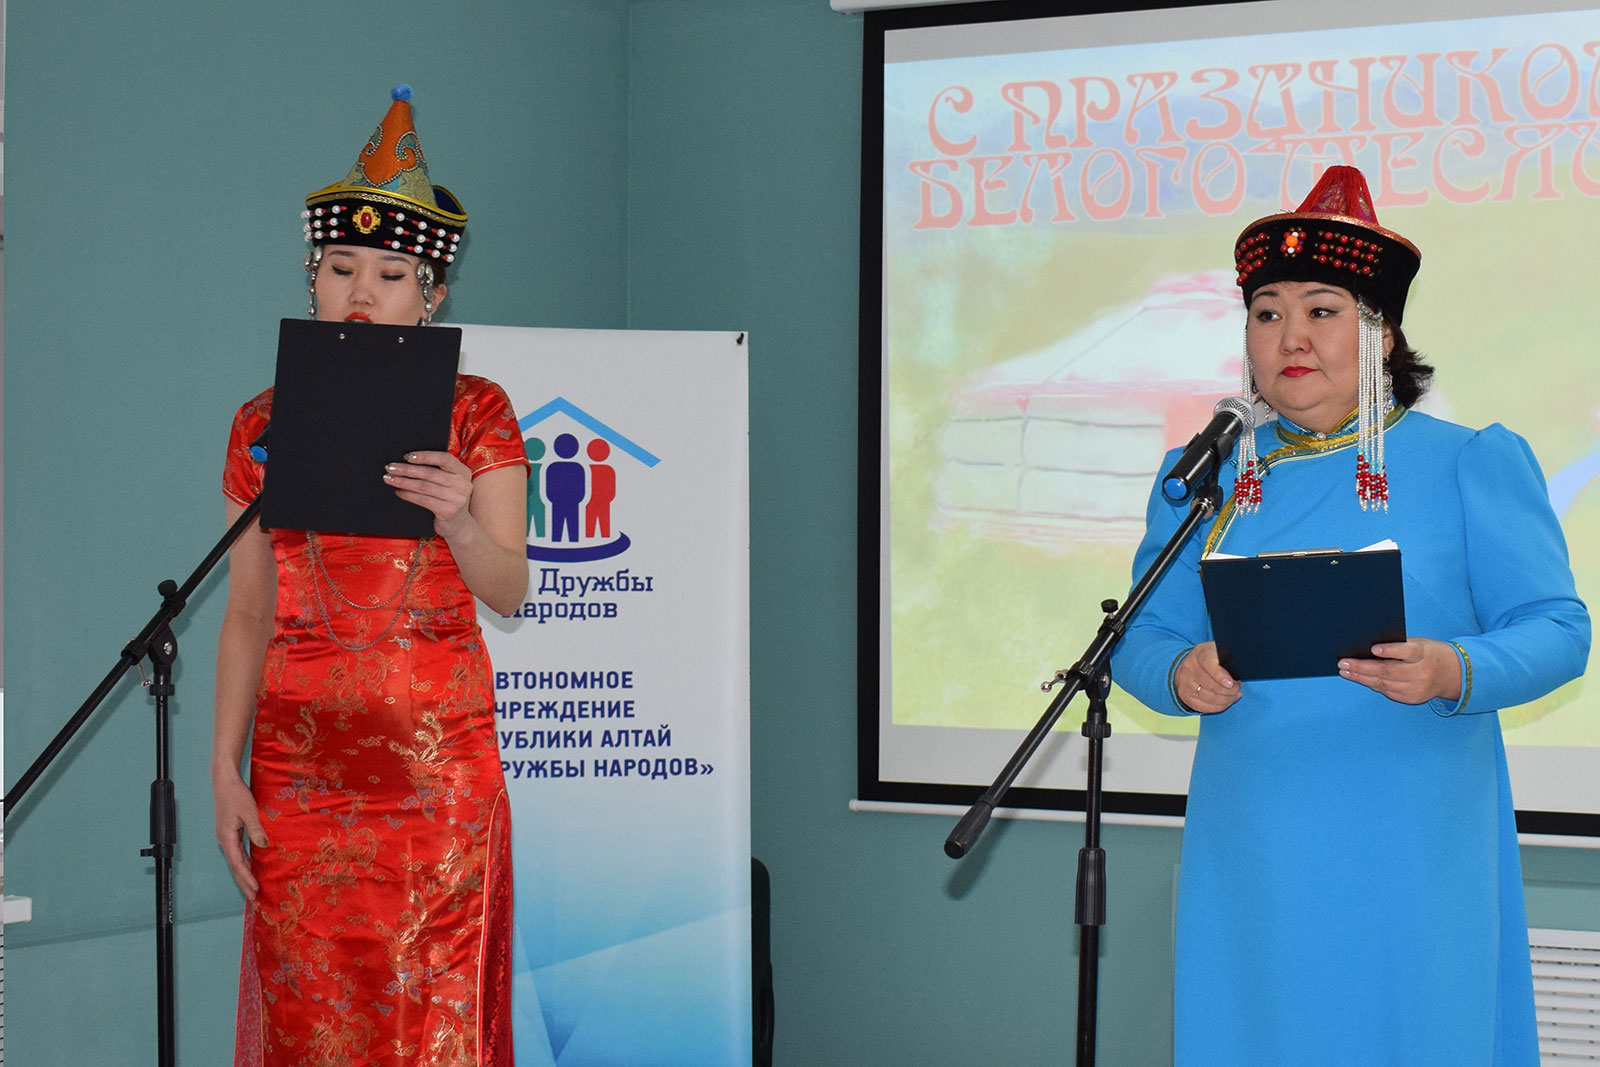 Праздник «Белого месяца» собрал под одной крышей представителей разных народов Республики Алтай